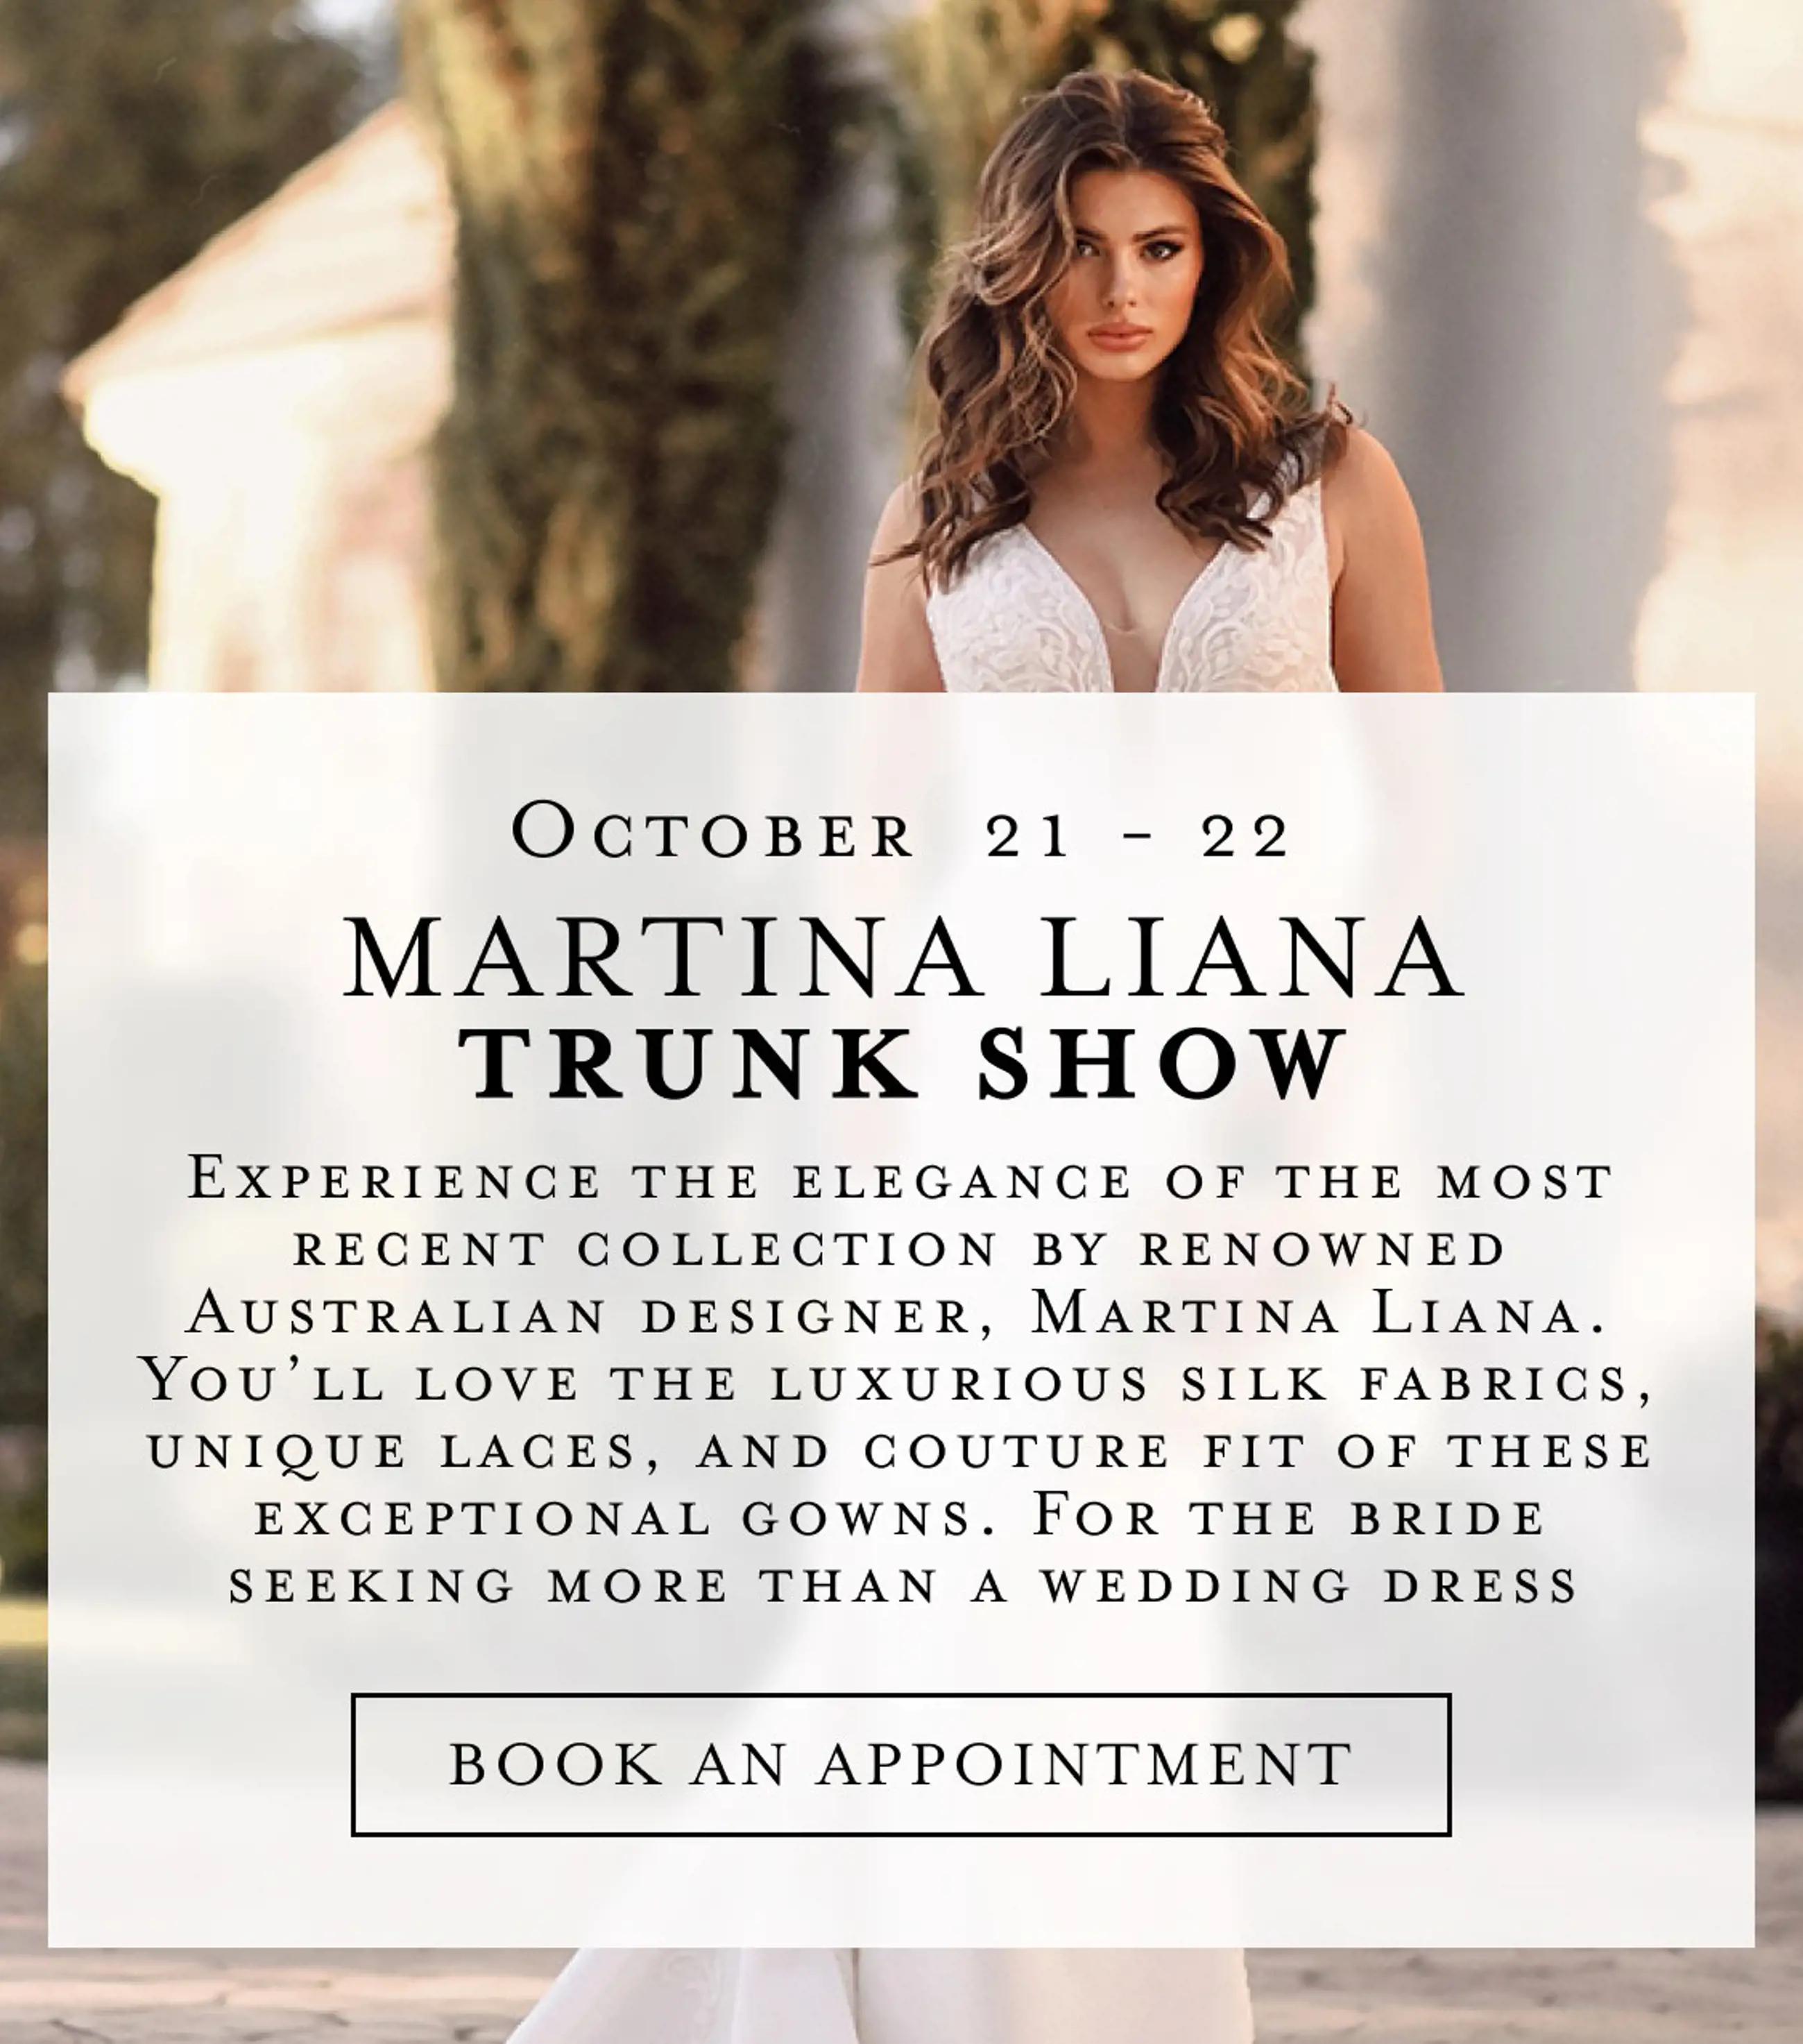 Martina Liana trunk show at Bella Bridal Gallery